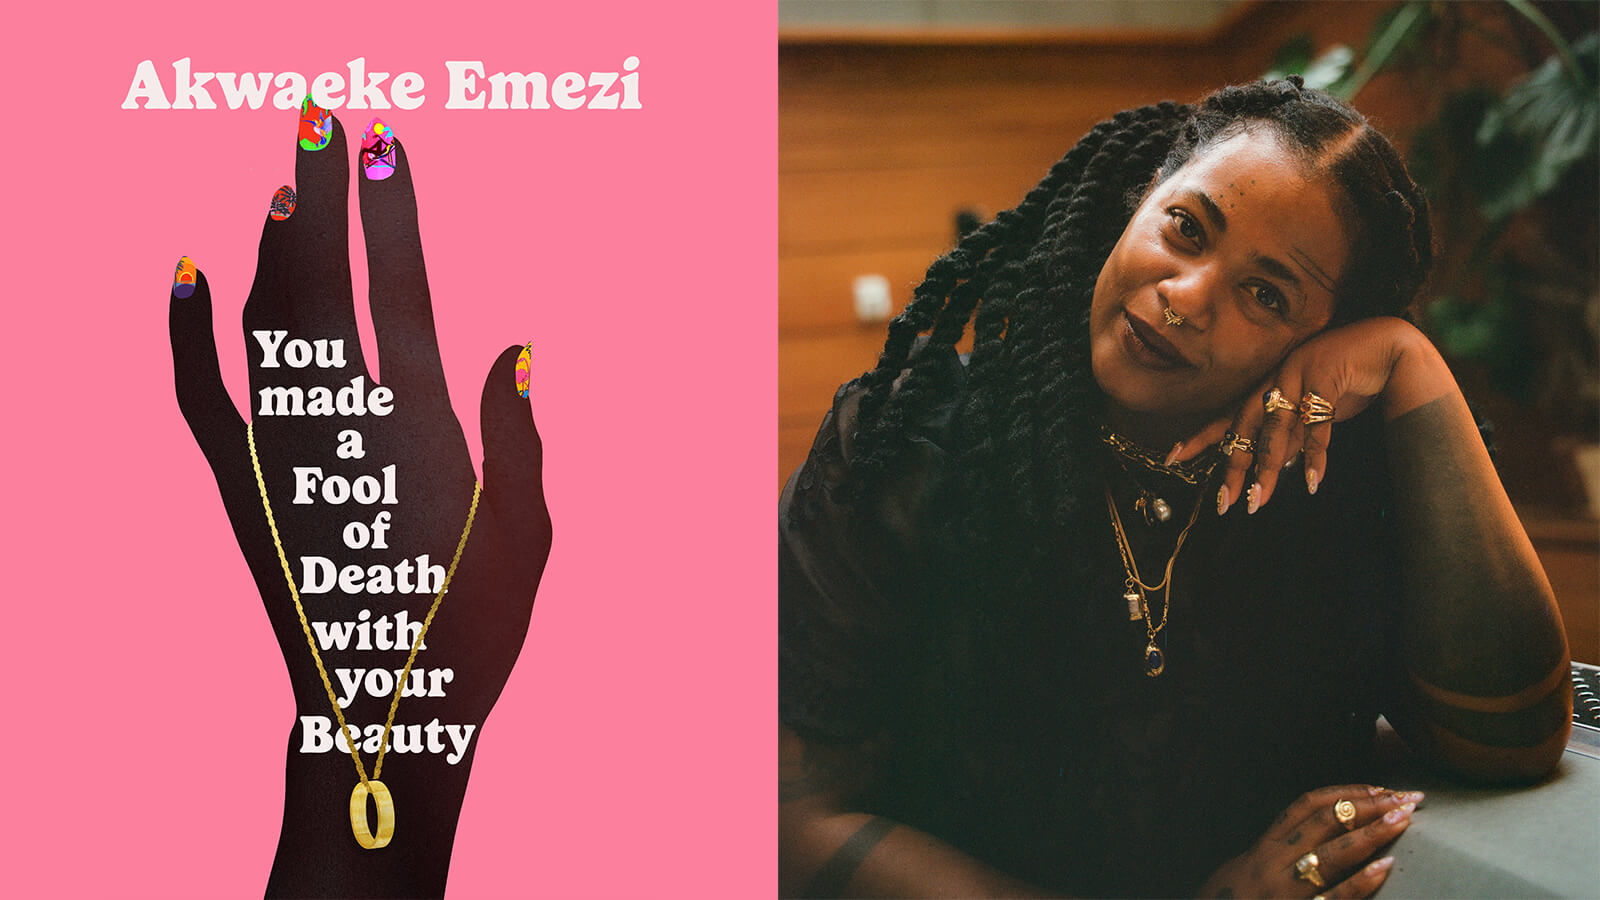 Portrait of Akwaeke Emezi and their book cover